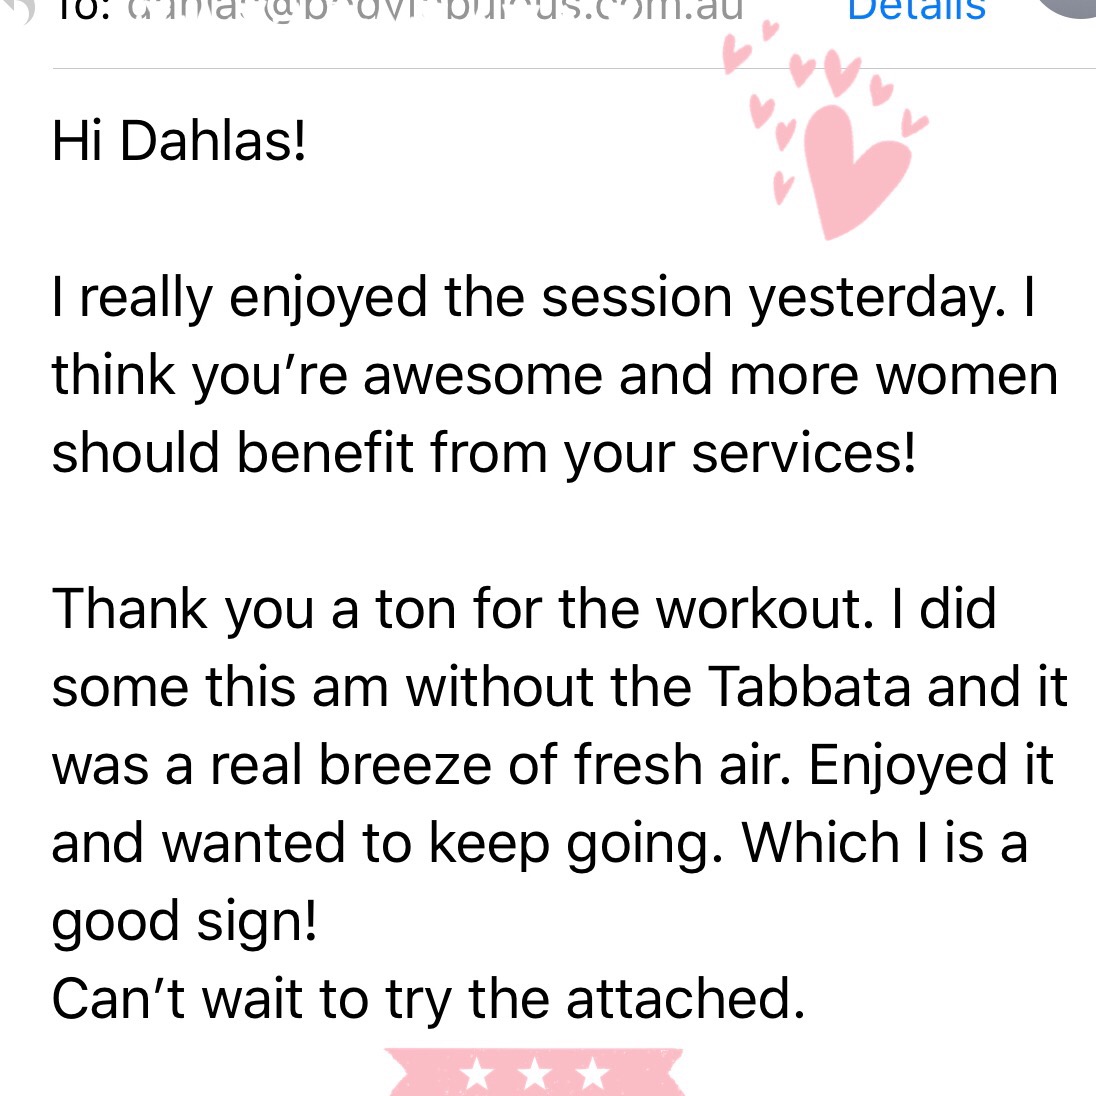 bodyfabulous_dahlas_review_pregnancy_workout